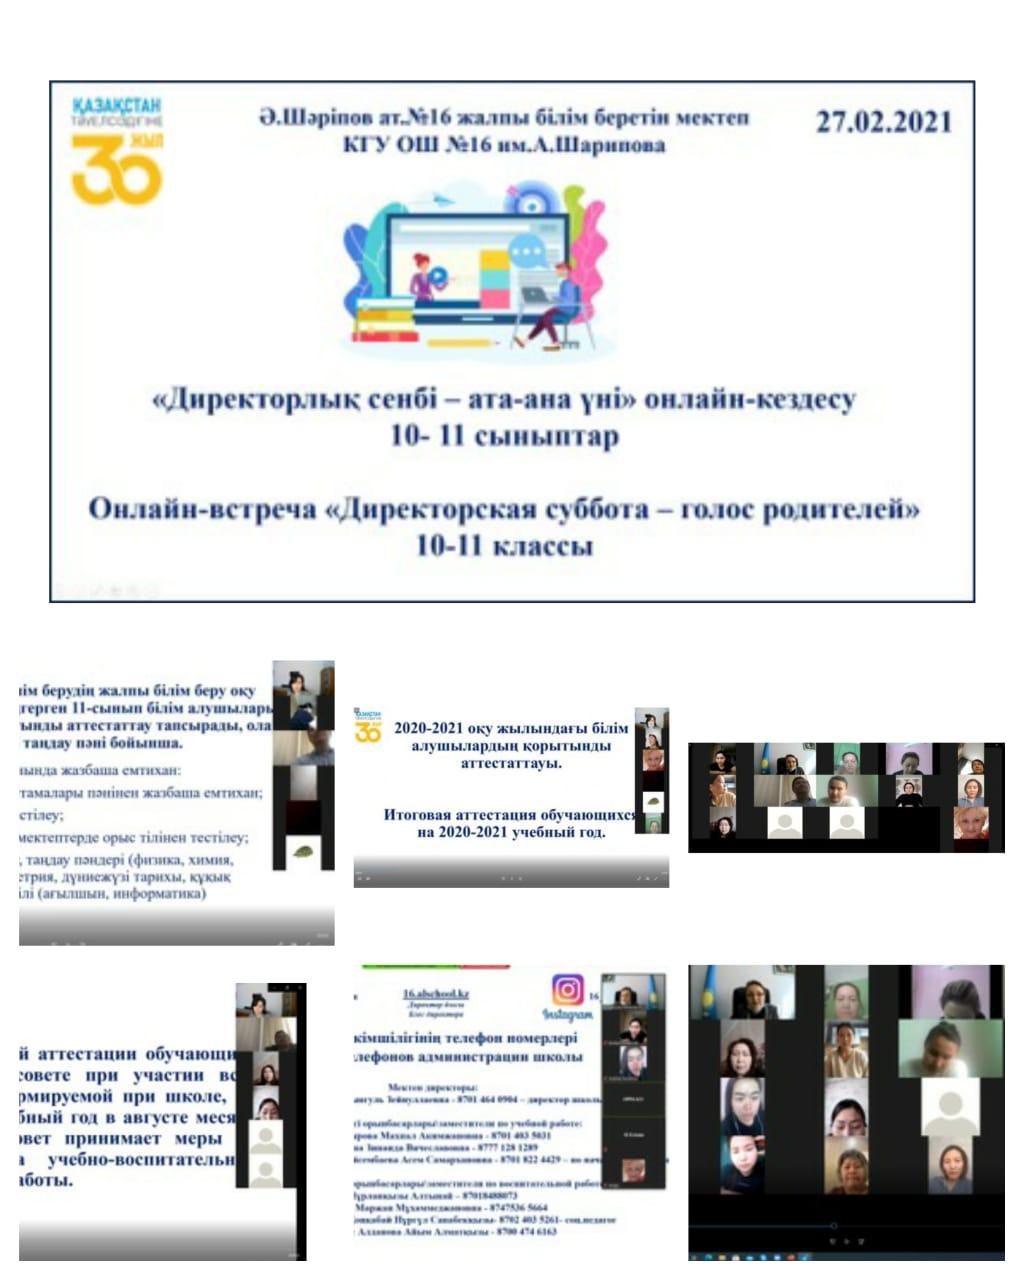 Онлайн-встреча  «Директорская суббота – голос родителей»  в КГУ ОШ №16 им.А.Шарипова